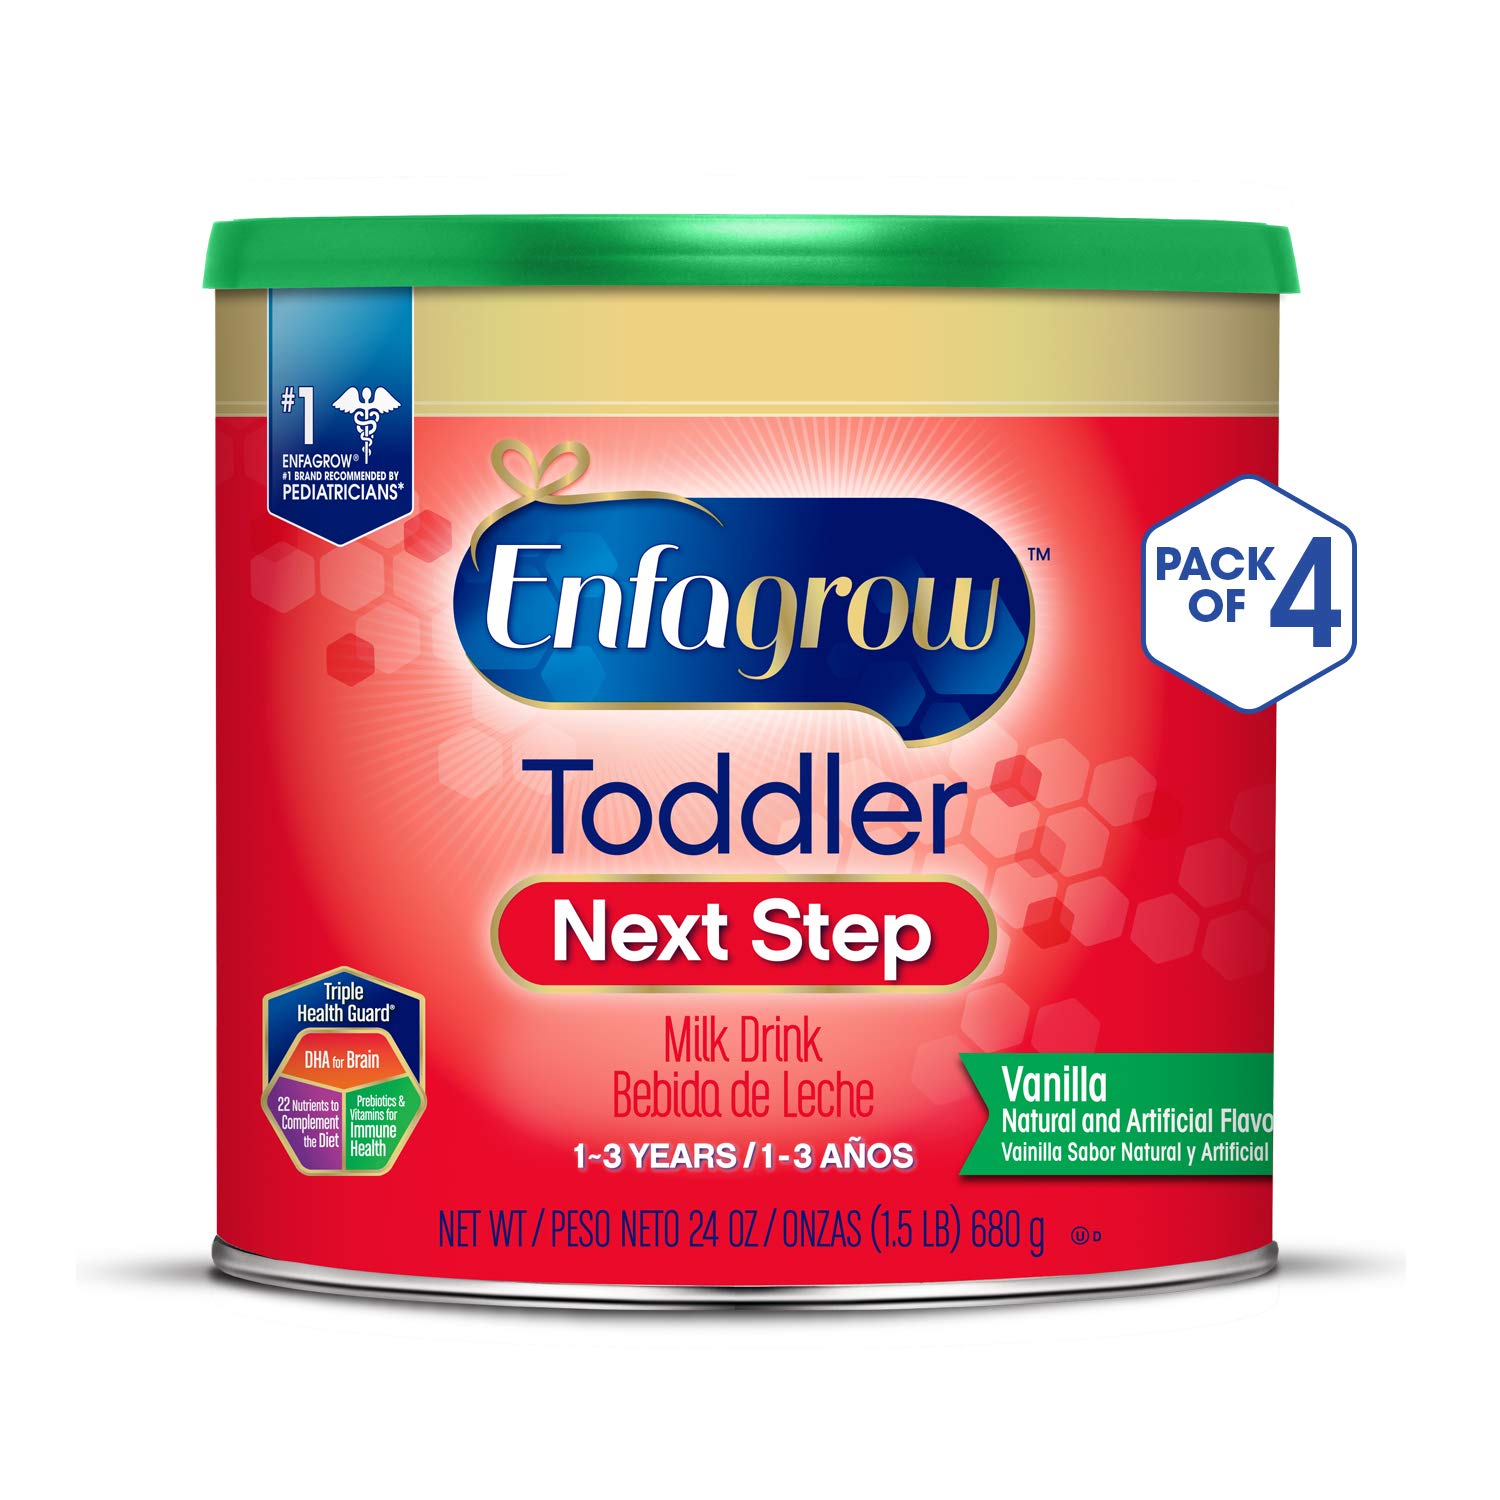 Enfagrow Toddler Next Step, Vanilla Flavor